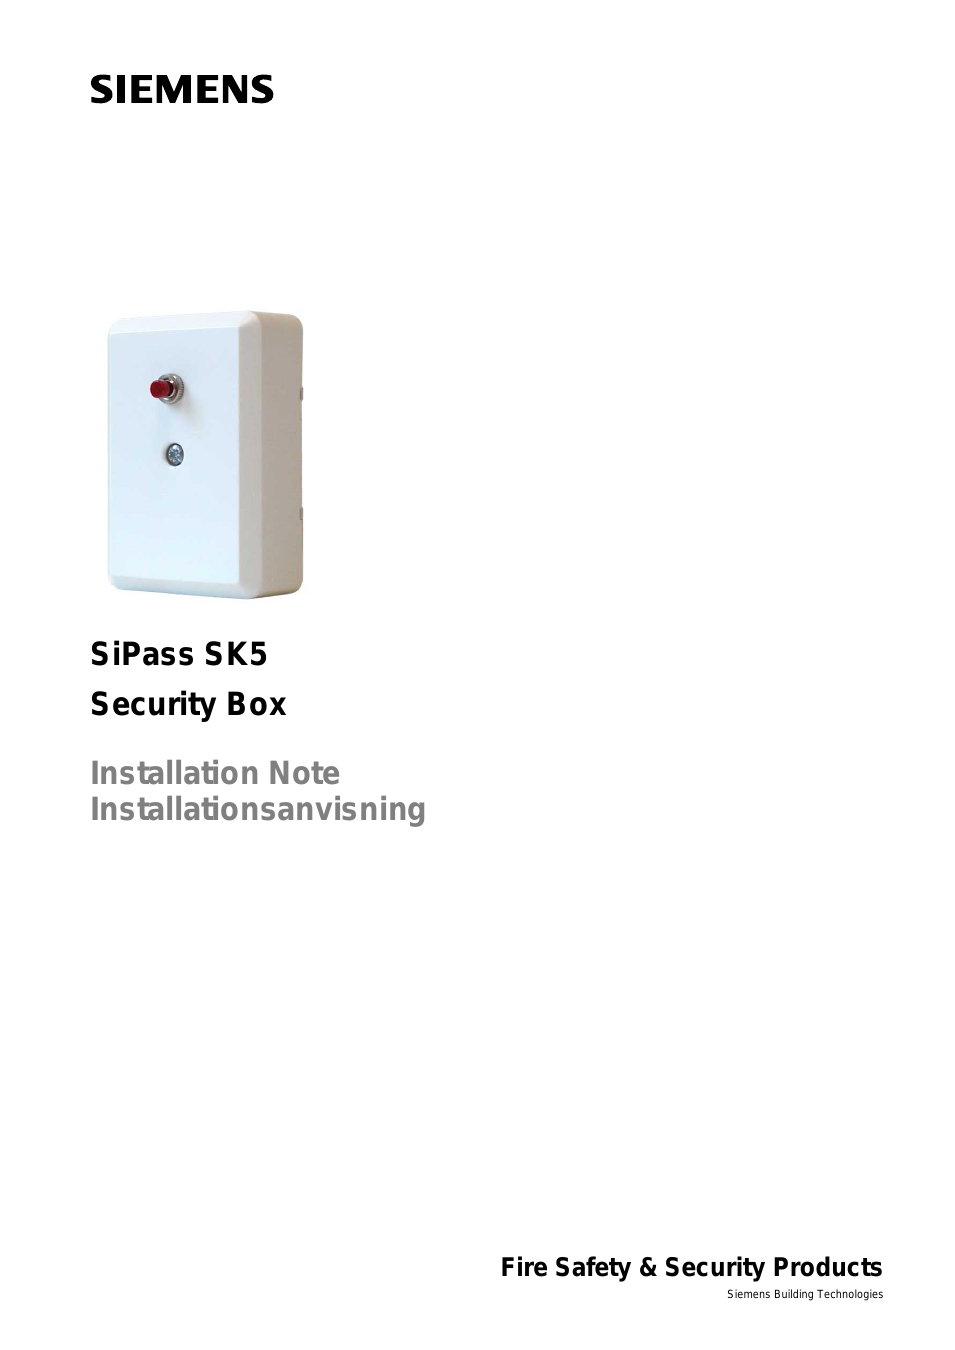 SIPASS SK5